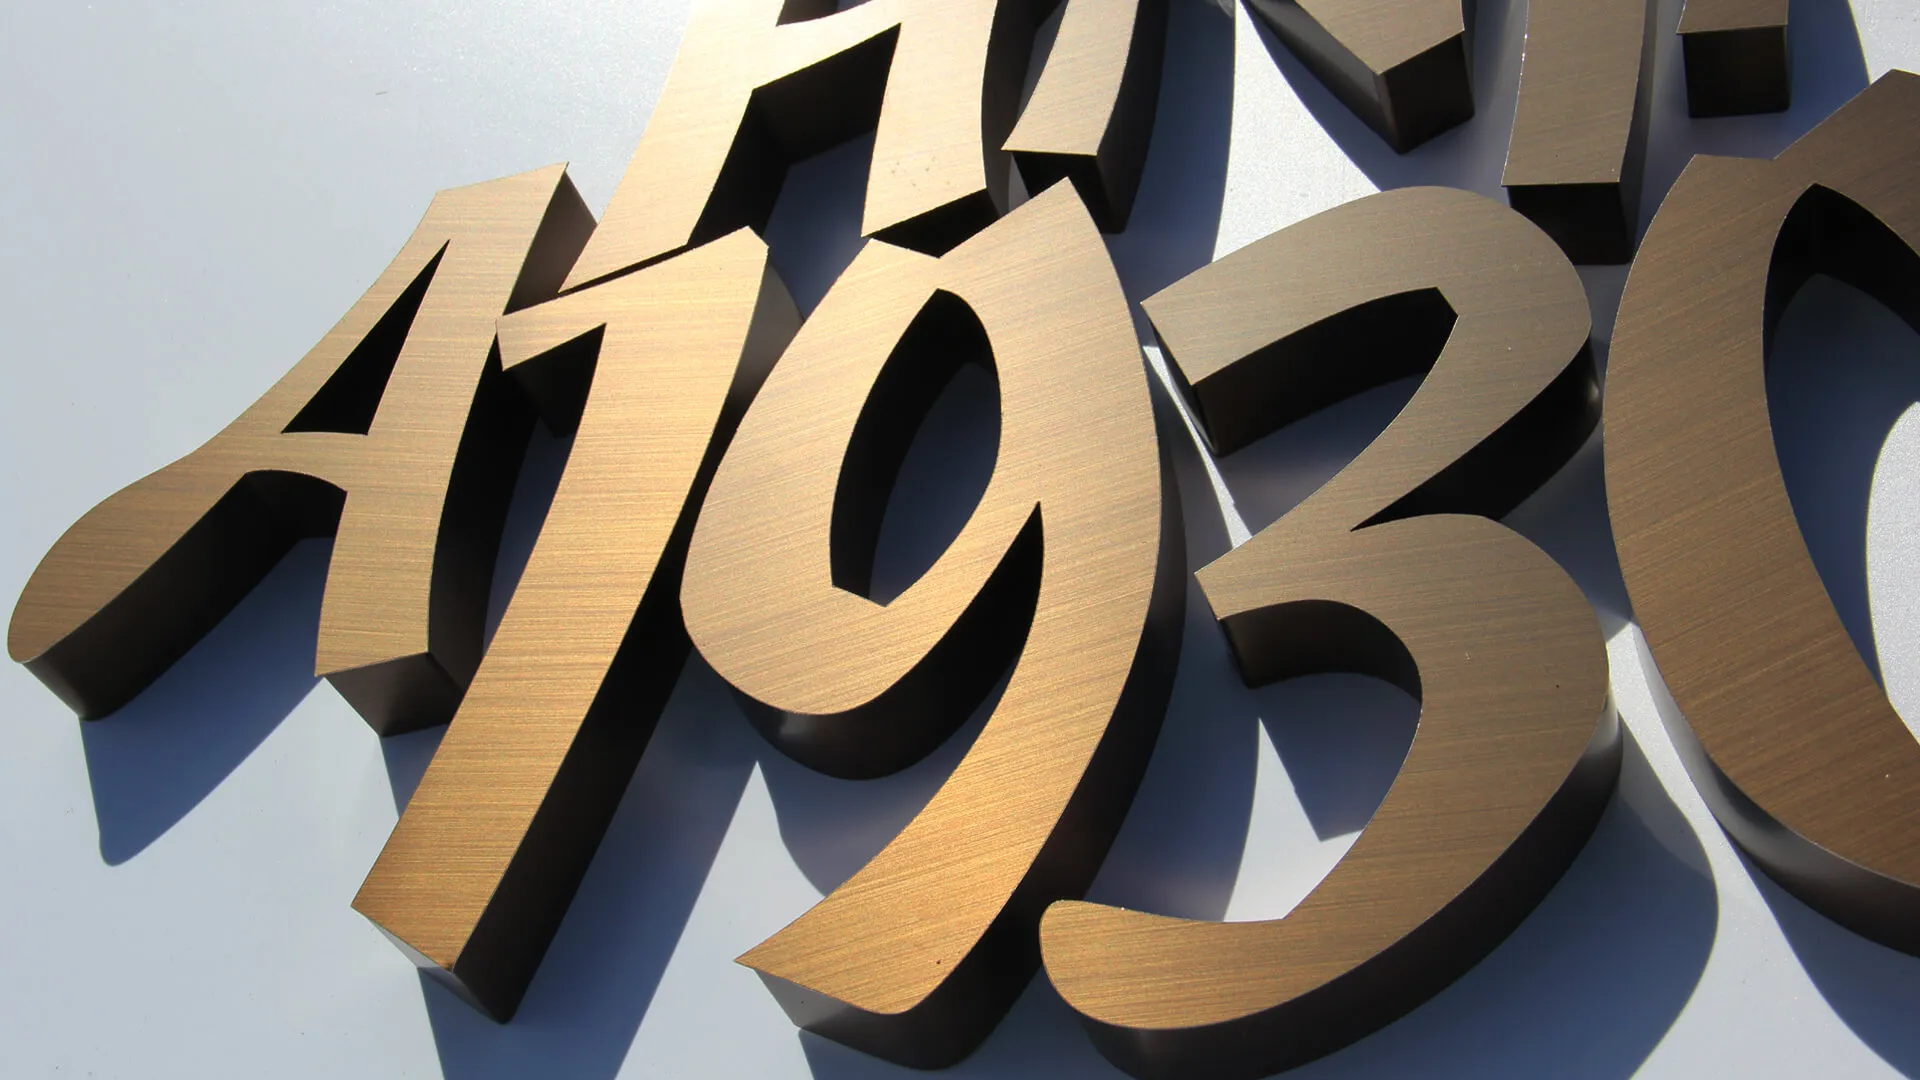 A1930 - Números y letras en acero inoxidable bronce cepillado.